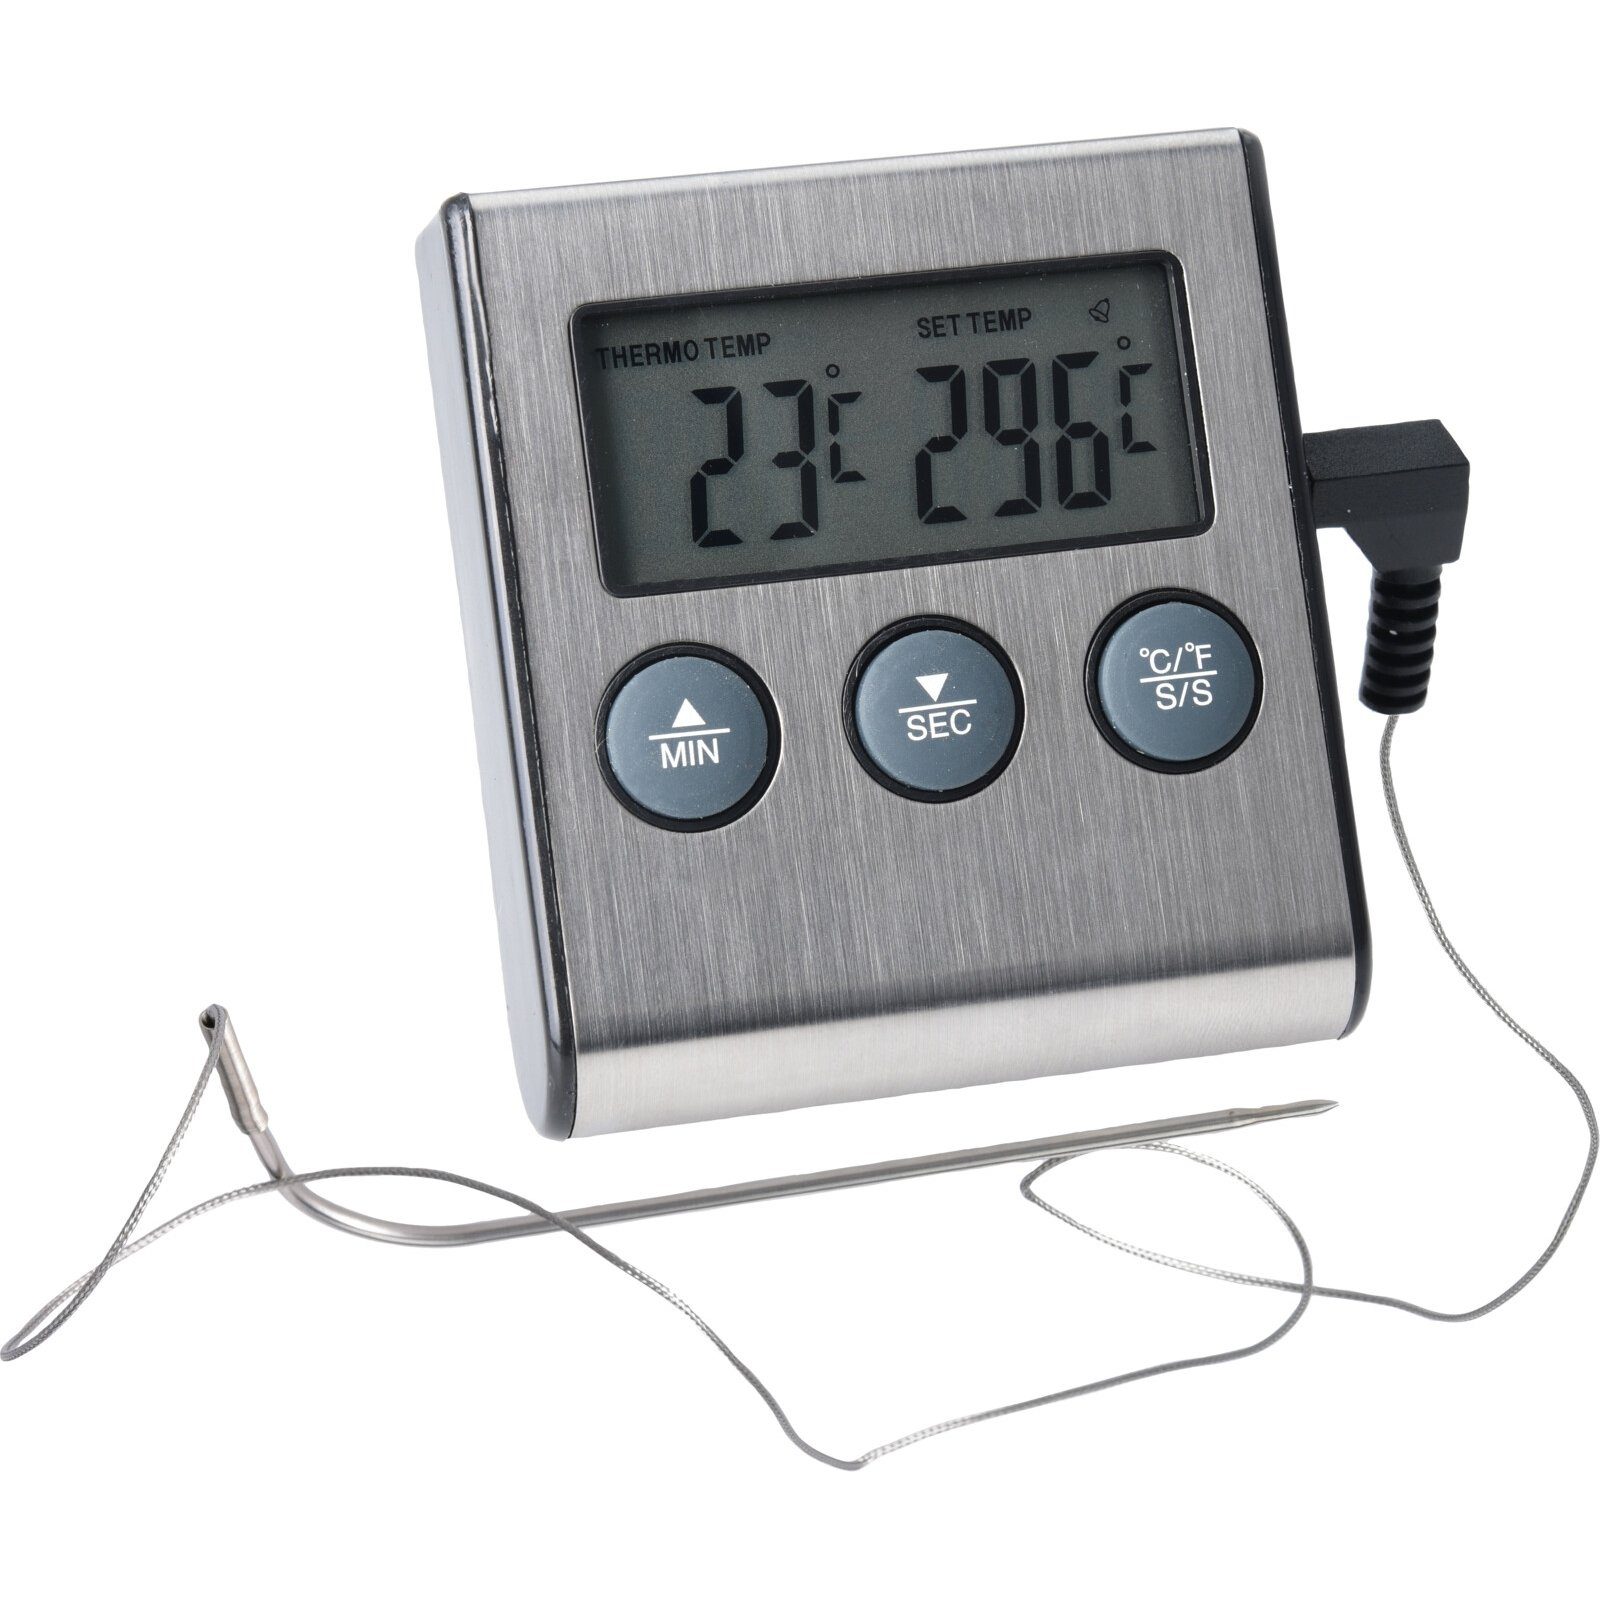 Bratenthermometer online kaufen | OTTO